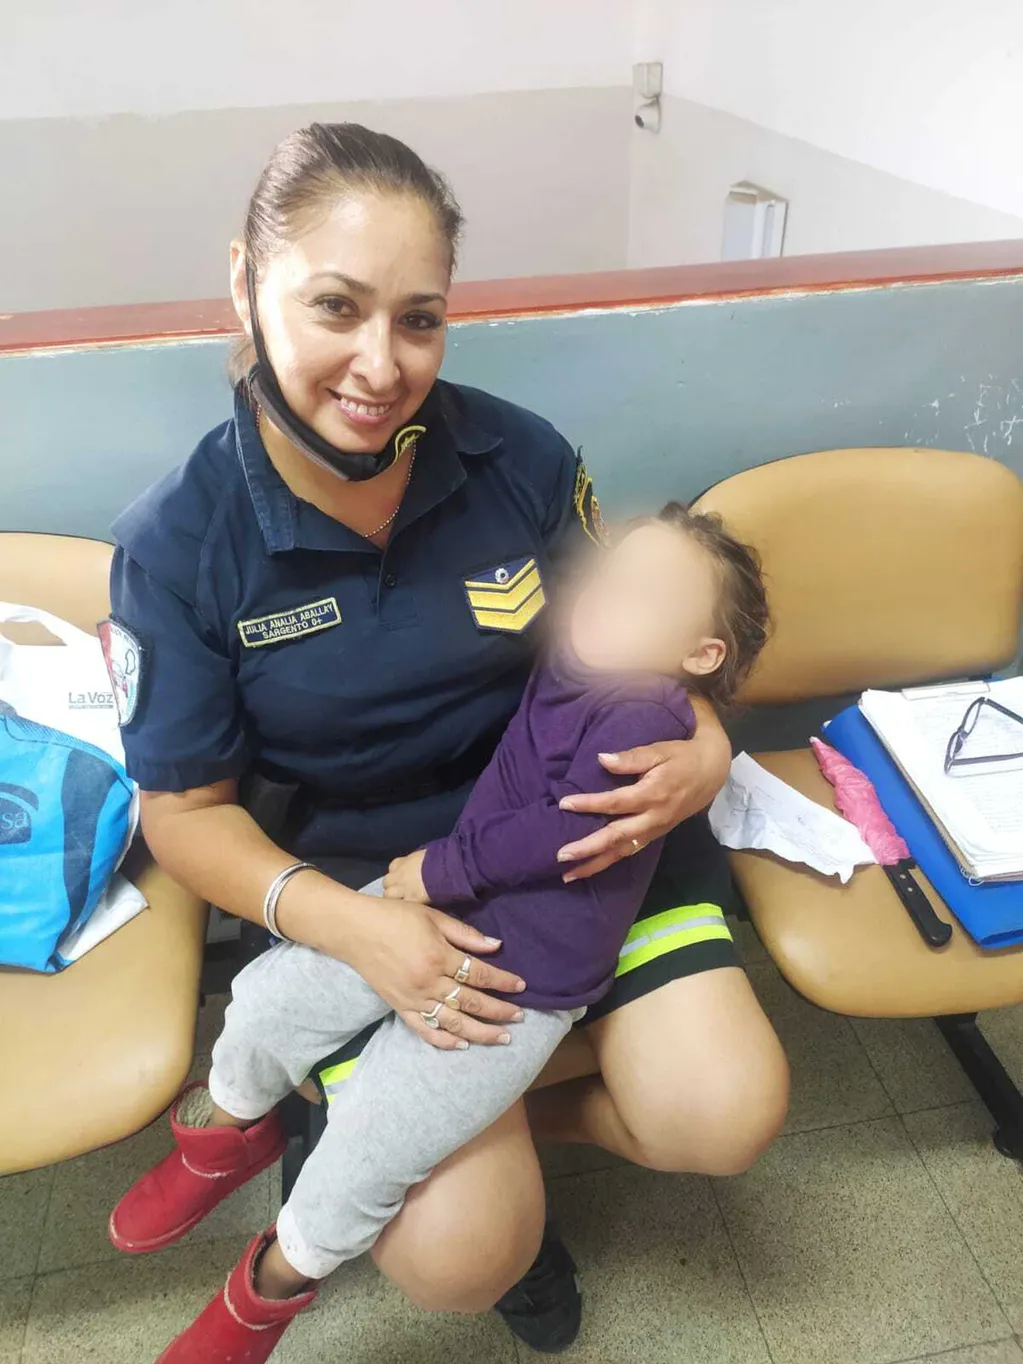 La niña duerme en brazos de la sargenta Analía Aballay, que la rescató del maltrato que sufría en su hogar.